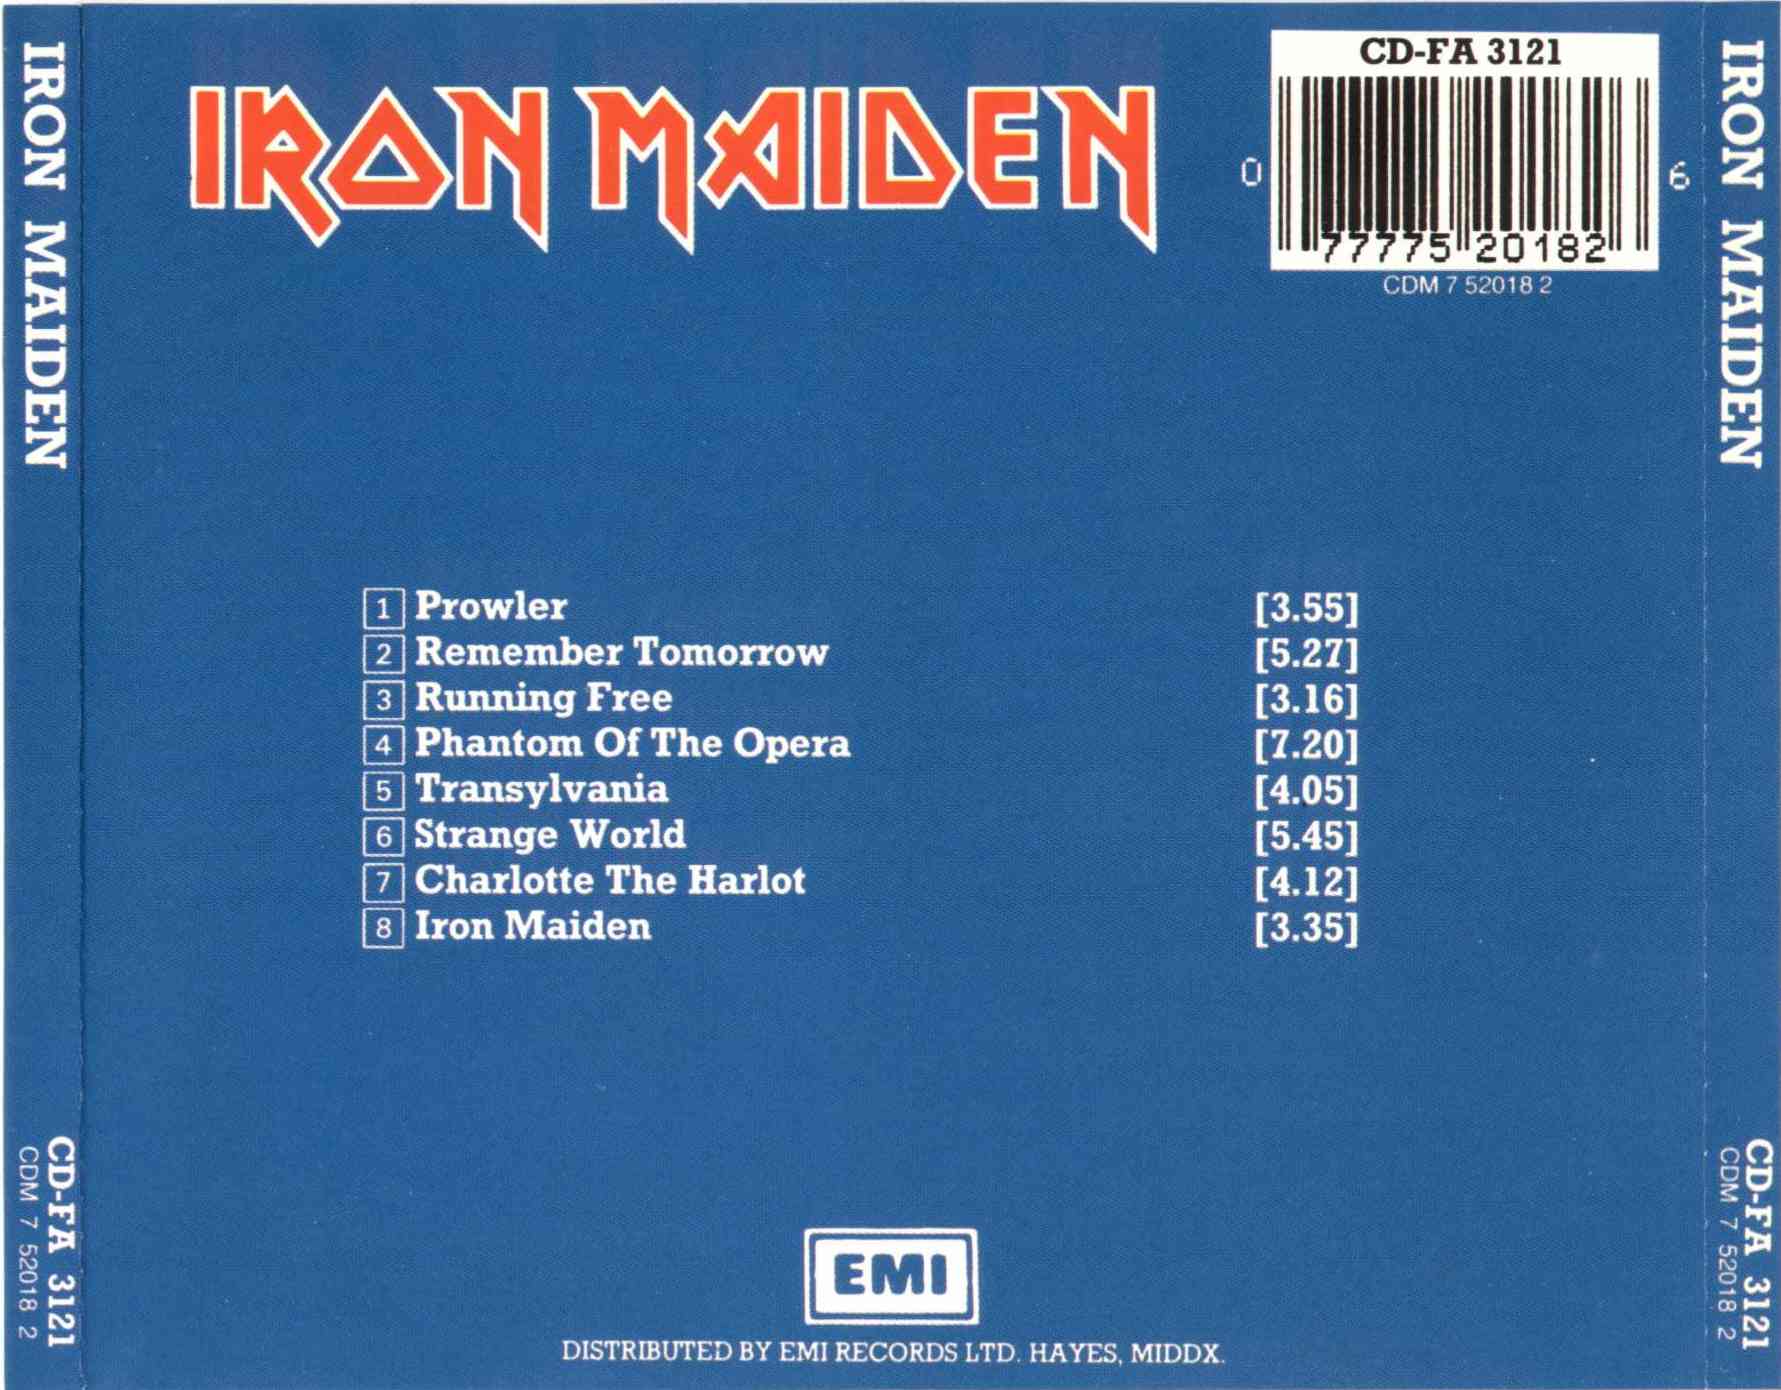 1980 - Iron Maiden - Iron Maiden-C.jpg